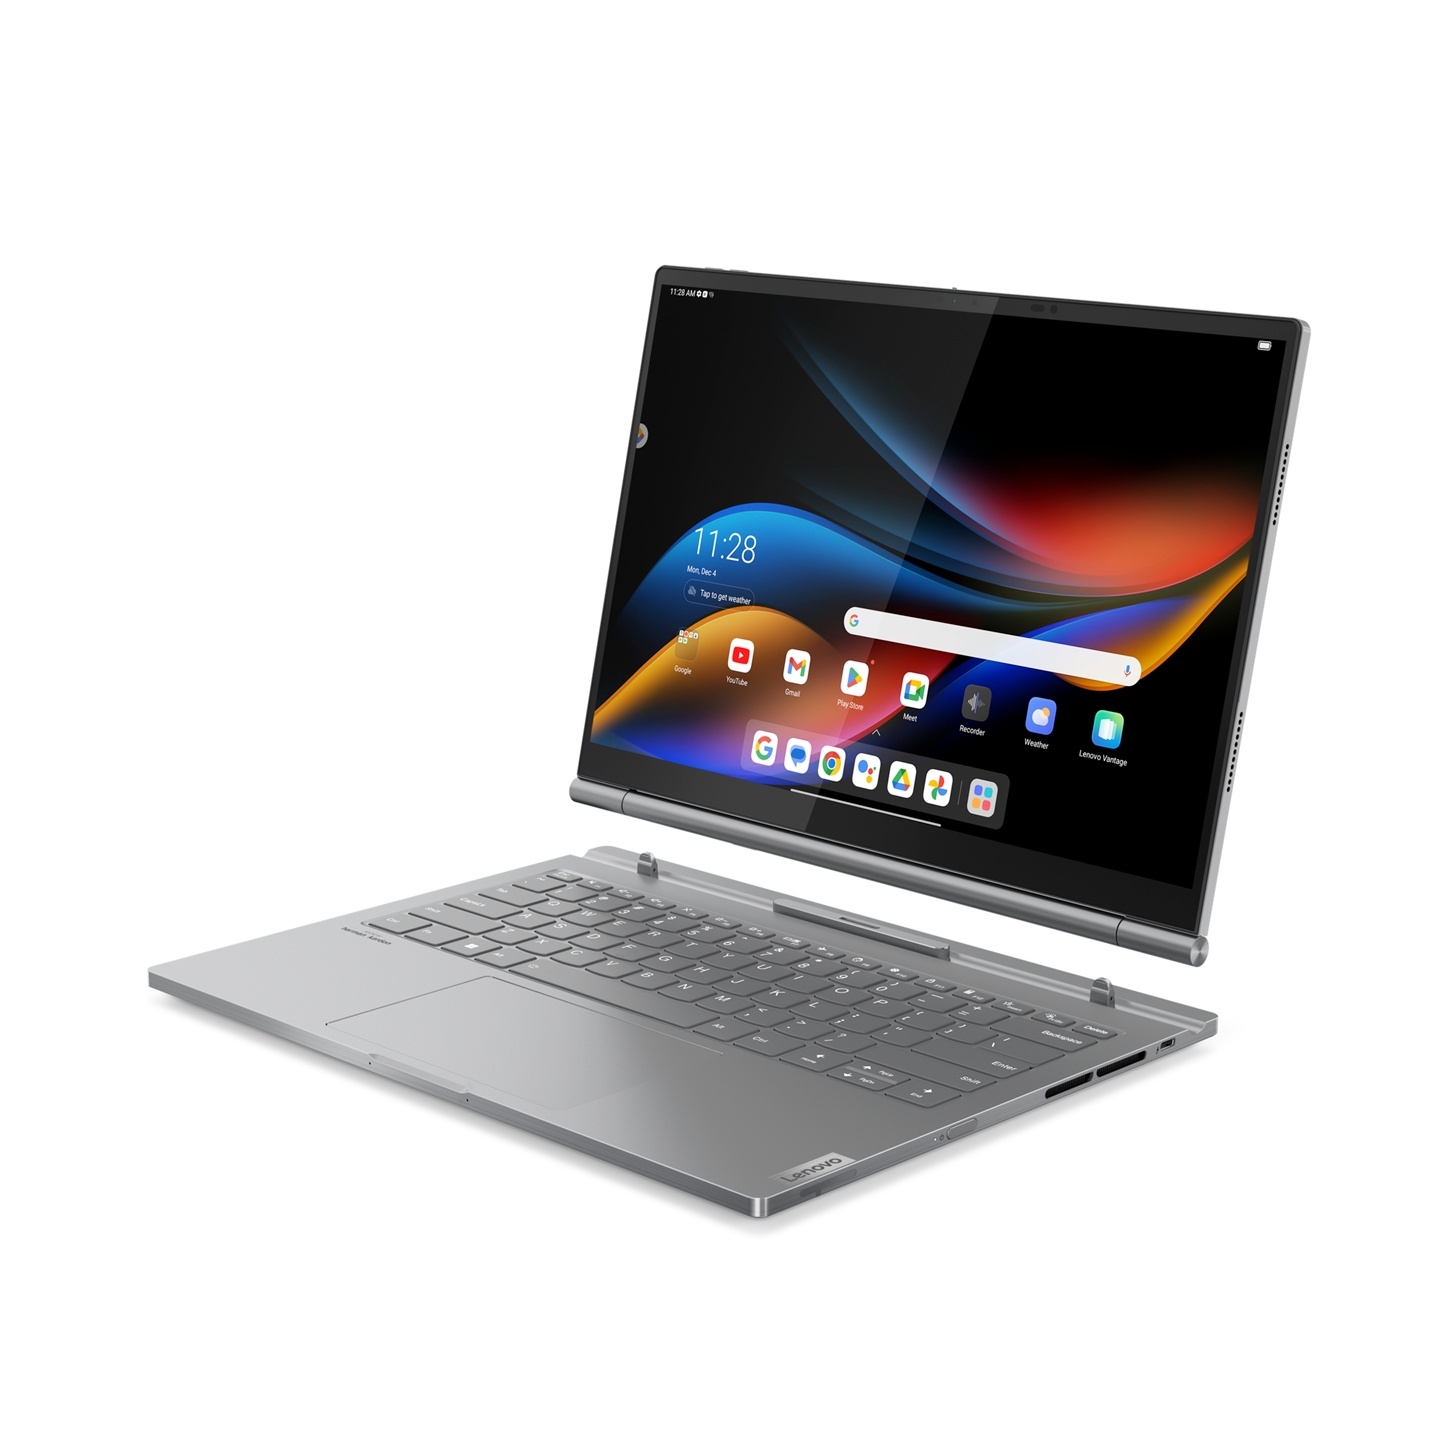 Lenovo 在 CES 公布多款筆電更新：X1 Carbon、X1 2-in-1 翻轉筆電與雙系統切換機種 ThinkBook Plus